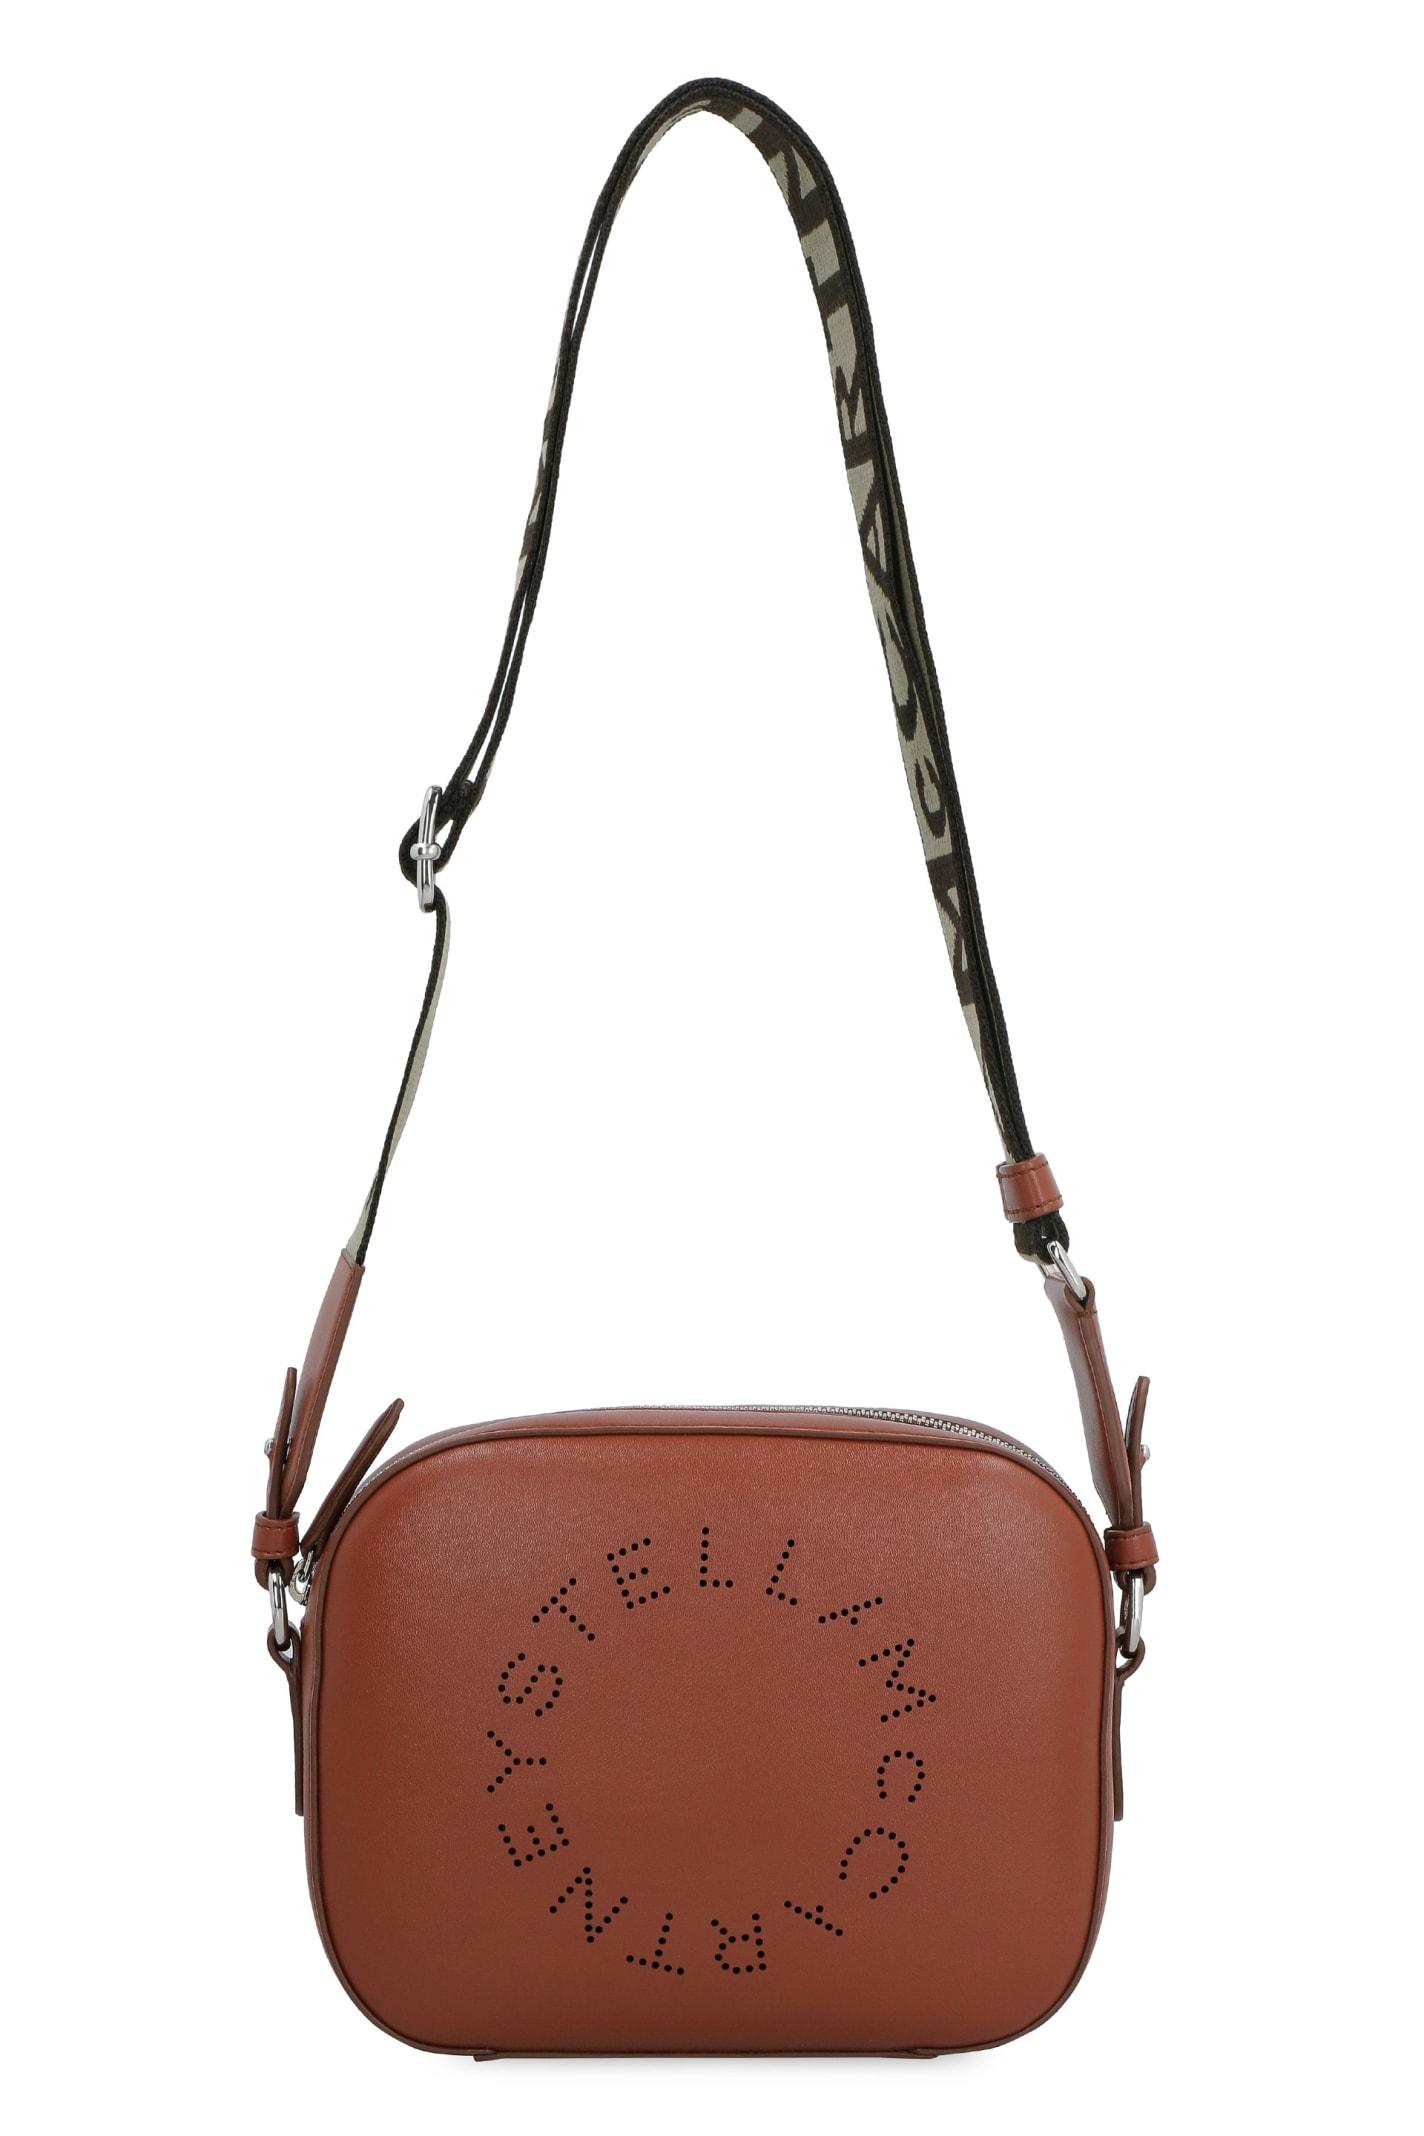 Stella McCartney Stella Logo Camera Bag in Brown | Lyst